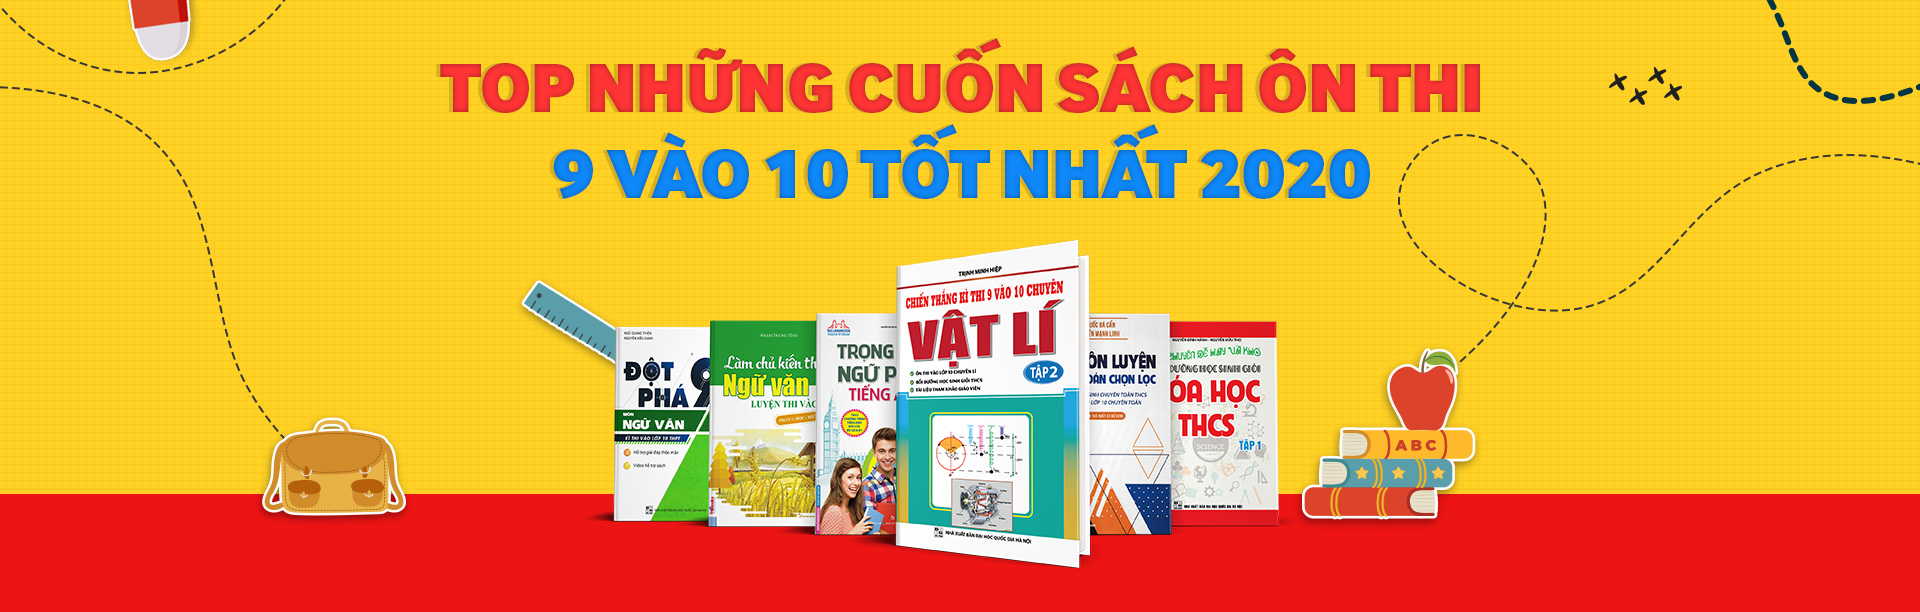 Top Những Cuốn Sách Ôn Luyện Thi Vào 10 Bán Chạy Nhất Newshop.vn